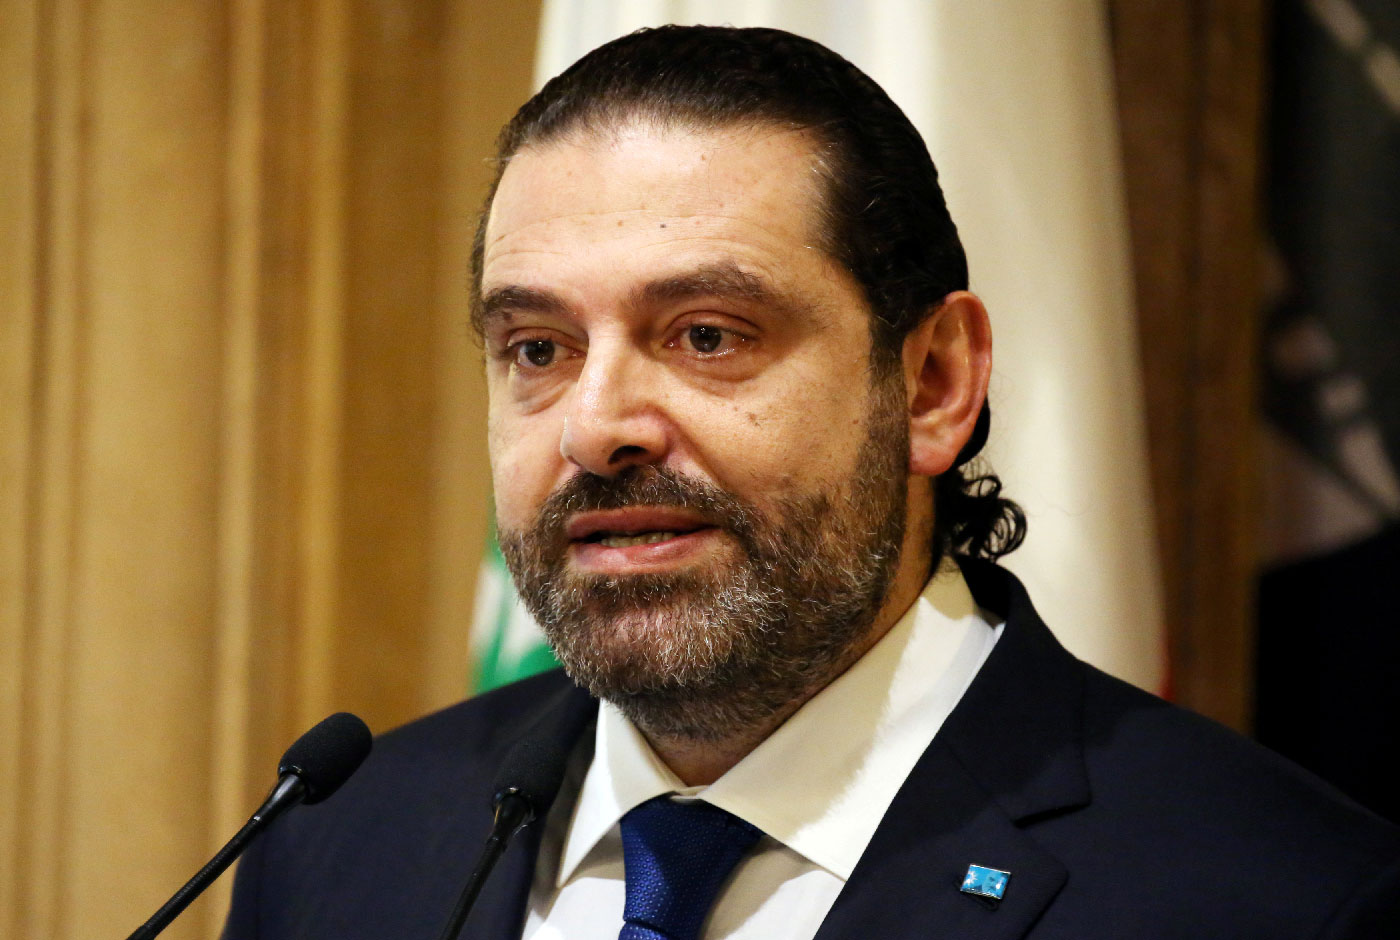  Lebanese Prime Minister-designate Saad al-Hariri speaks during a news conference in Beirut, Lebanon, November 13, 2018. 